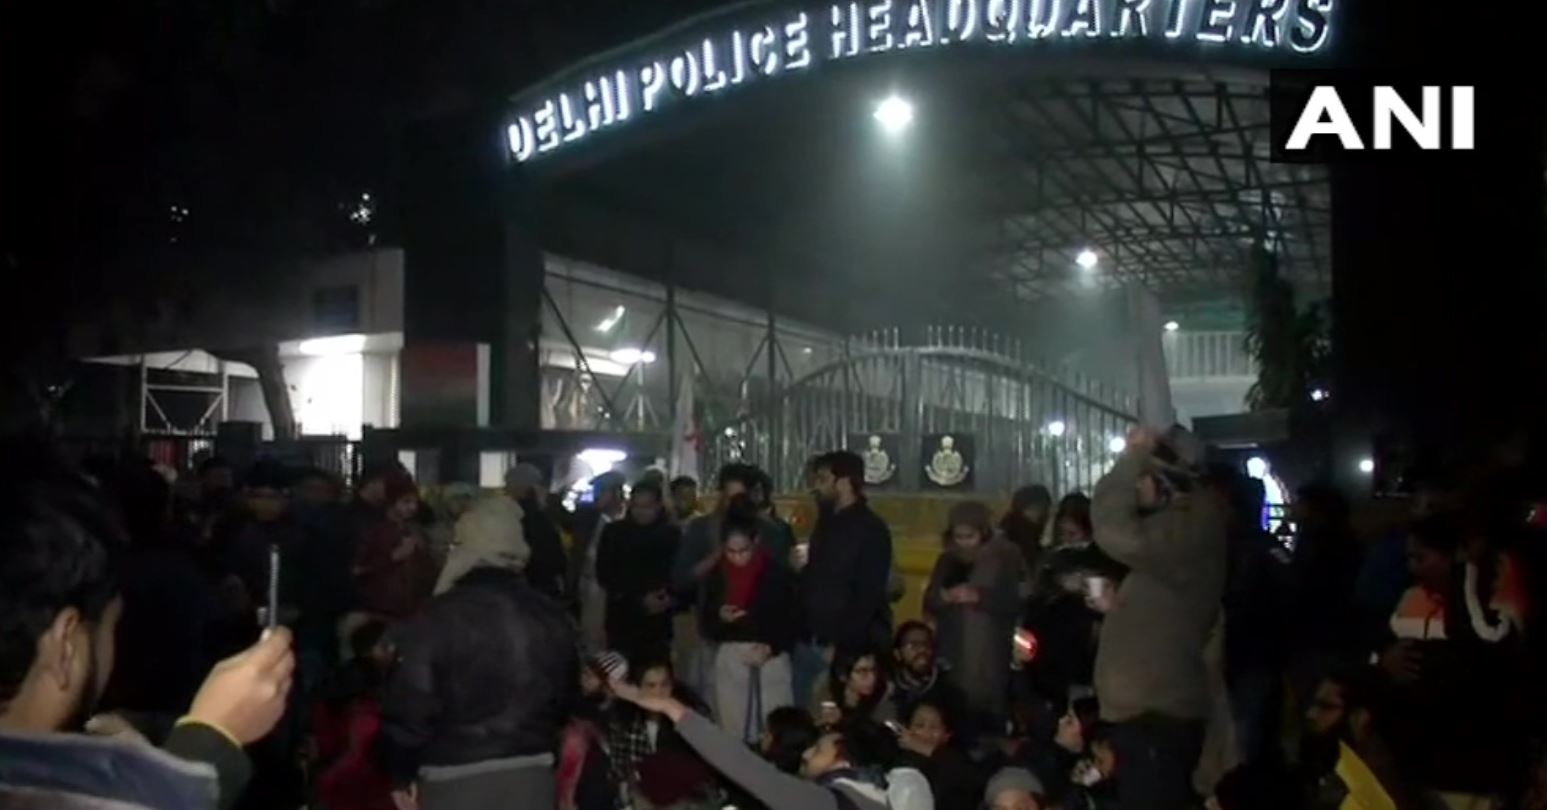 हिरासत में लिए गए लोगों को छुड़ाने आधी रात को पुलिस मुख्यालय पर जुटे दंगाई